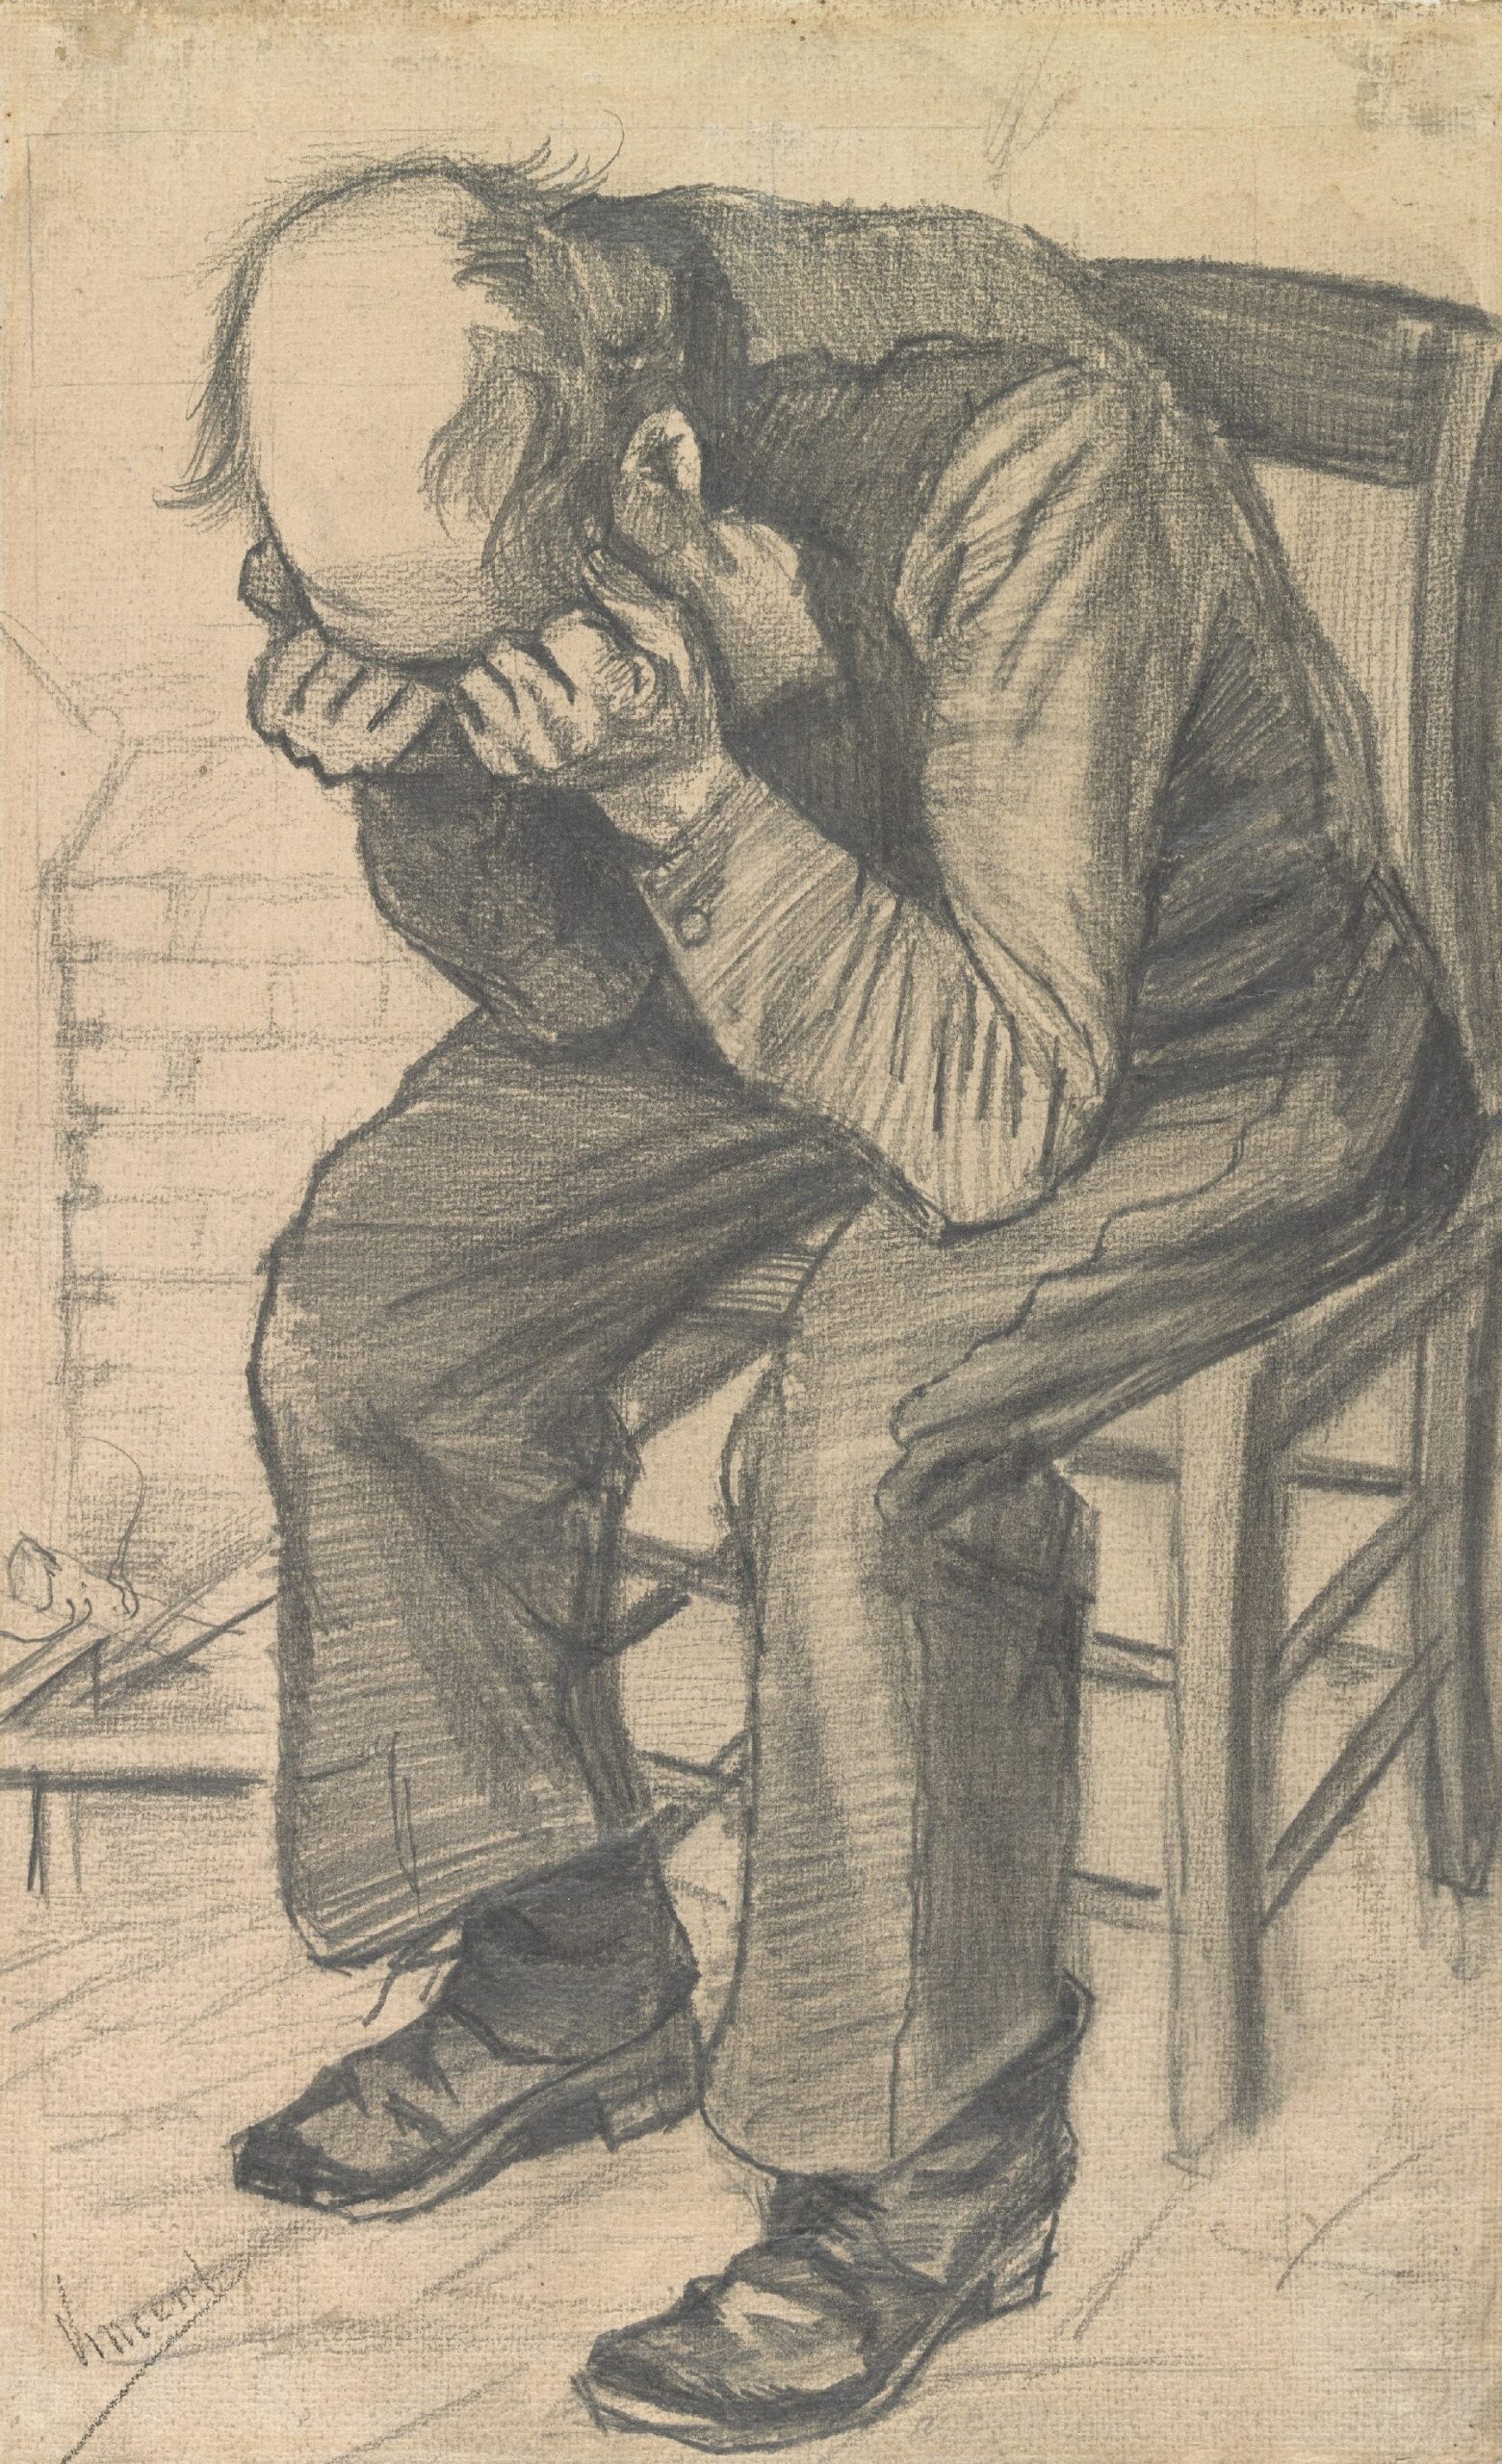 Worn out Vincent van Gogh (1853 - 1890), Den Haag, november 1882